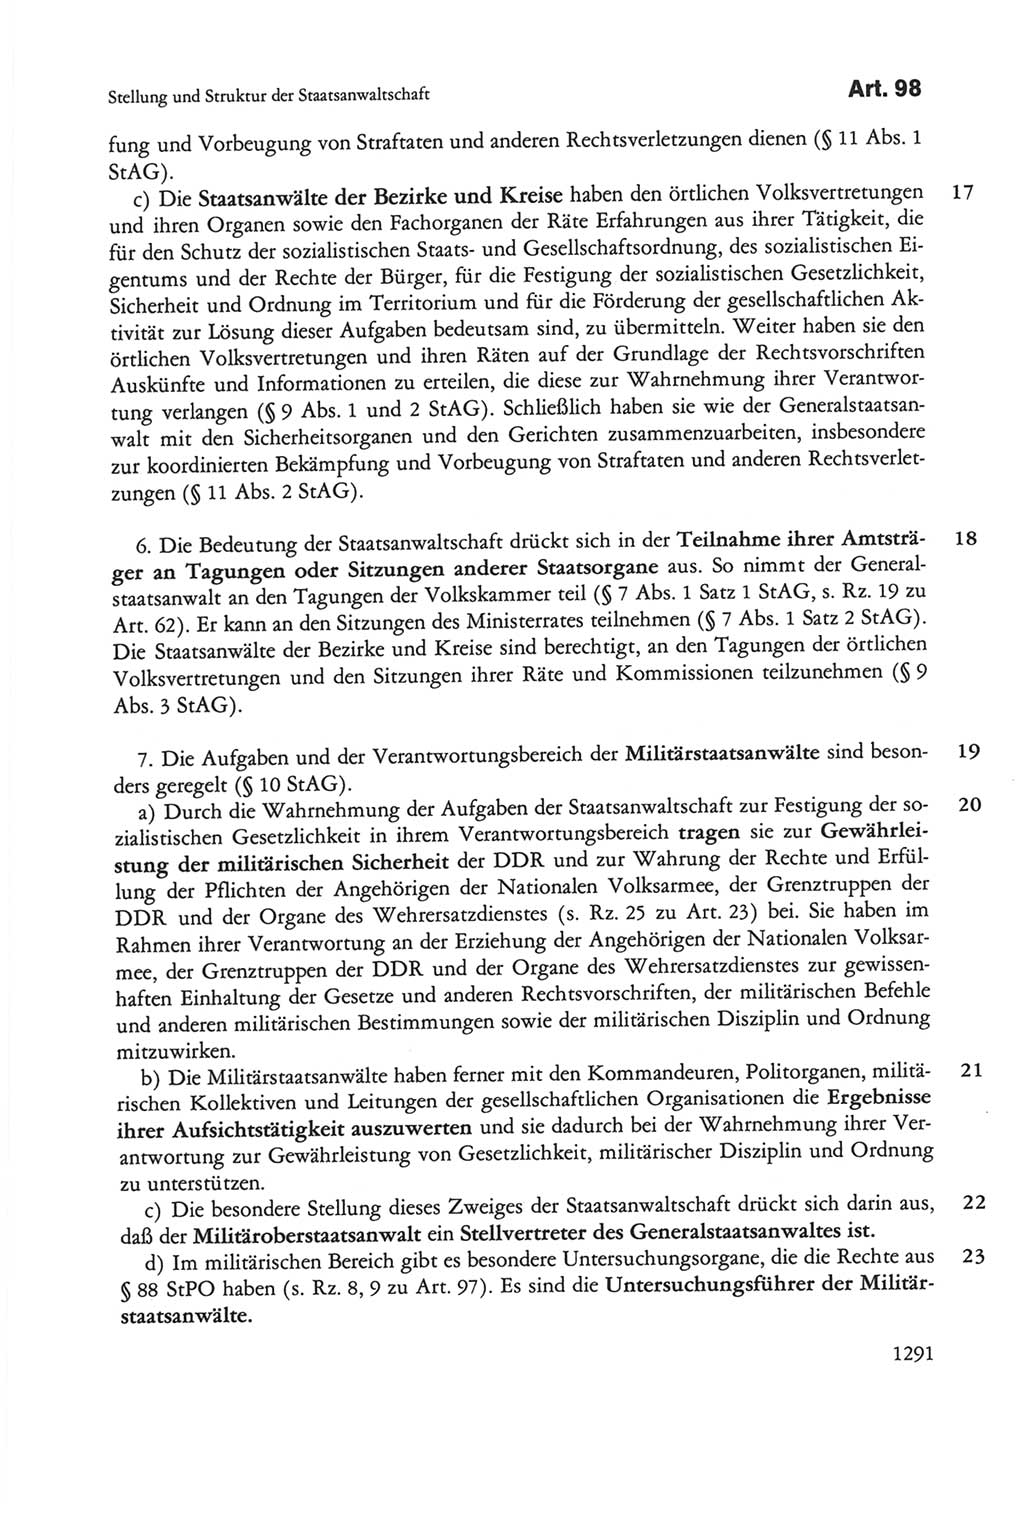 Die sozialistische Verfassung der Deutschen Demokratischen Republik (DDR), Kommentar mit einem Nachtrag 1997, Seite 1291 (Soz. Verf. DDR Komm. Nachtr. 1997, S. 1291)